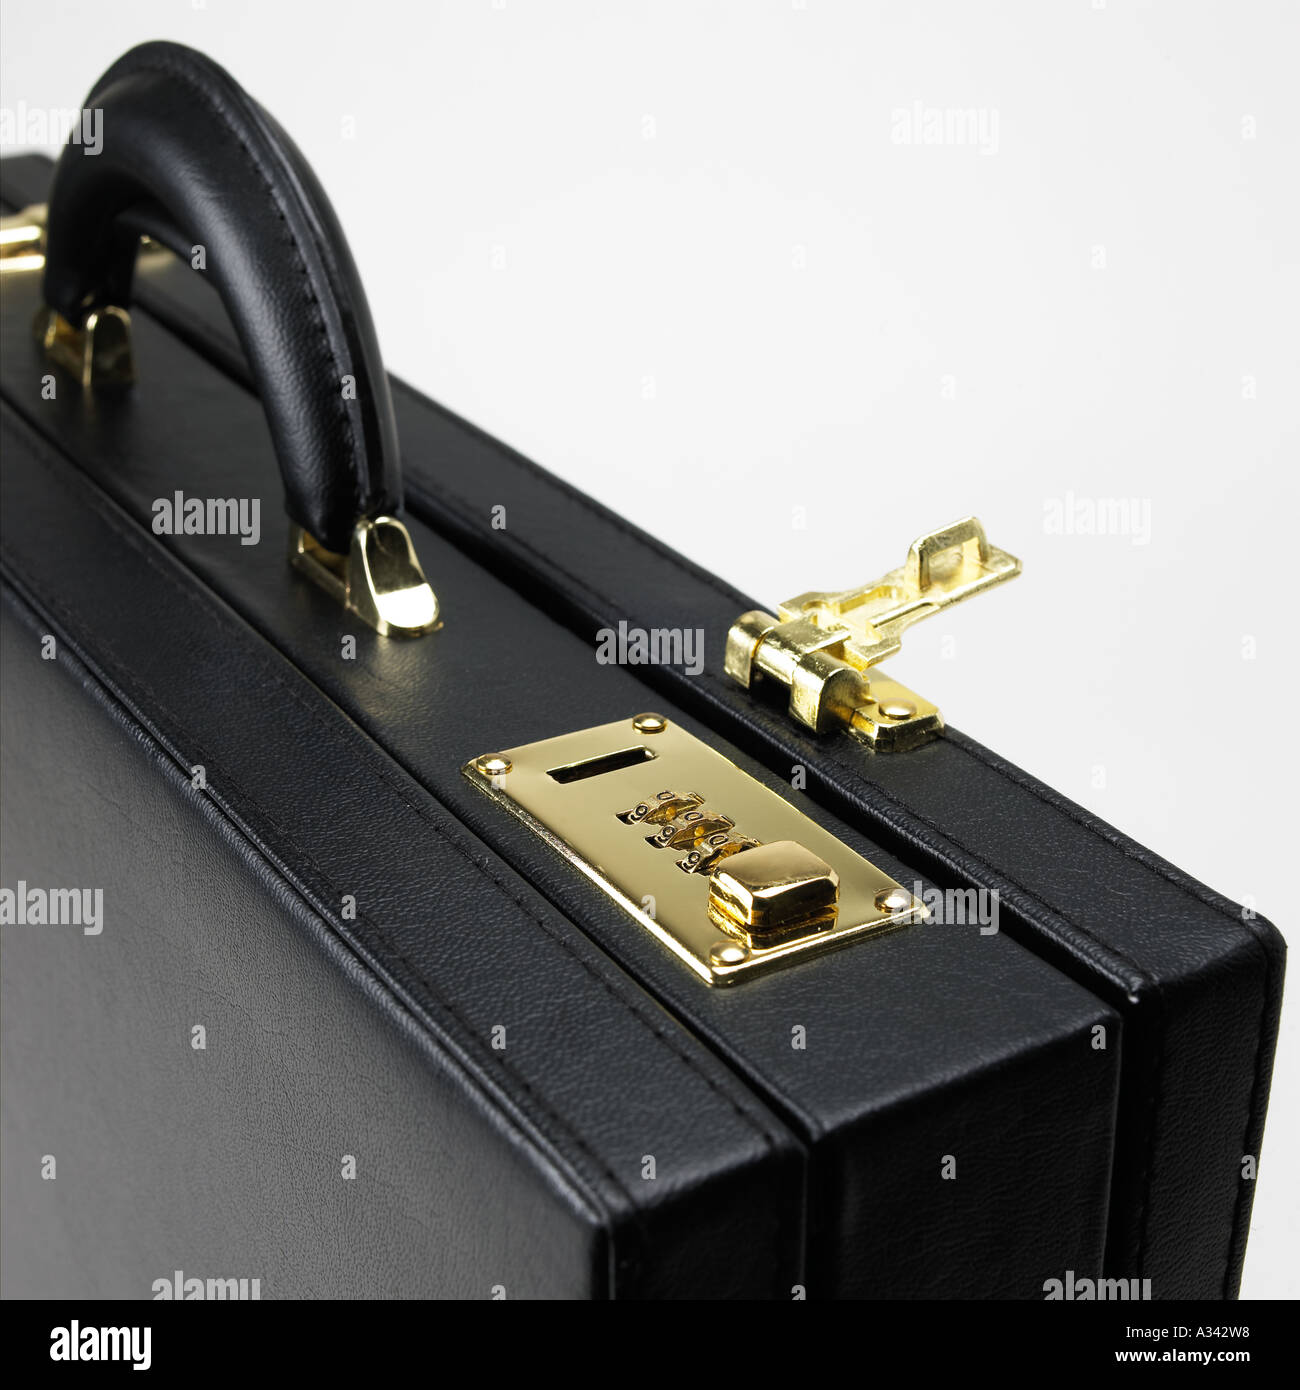 schwarzen Aktenkoffer mit Zahlenschloss öffnen Stockfotografie - Alamy